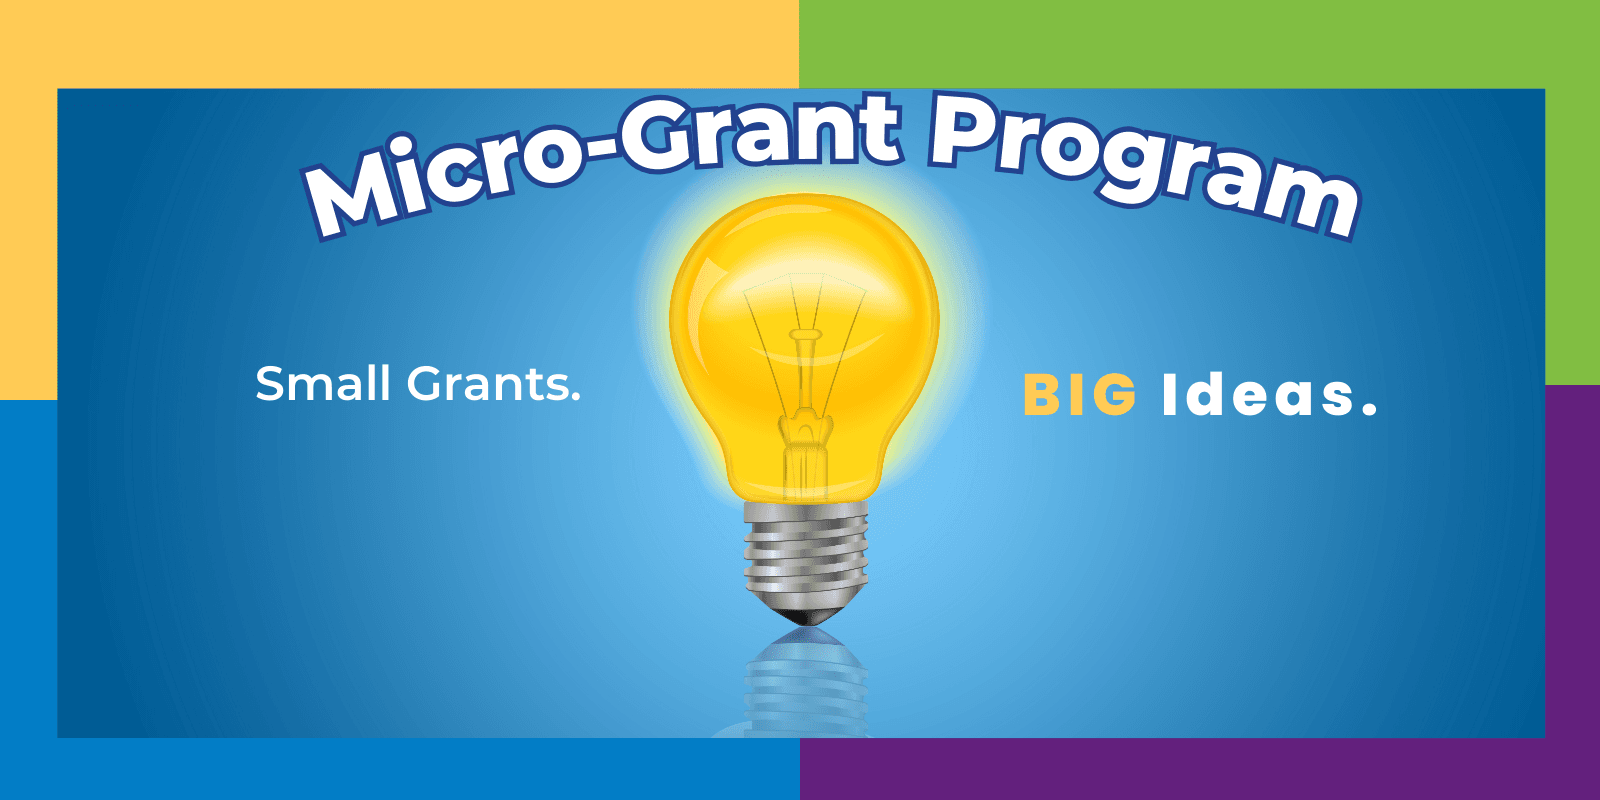 SGA's Micro-Grant Program